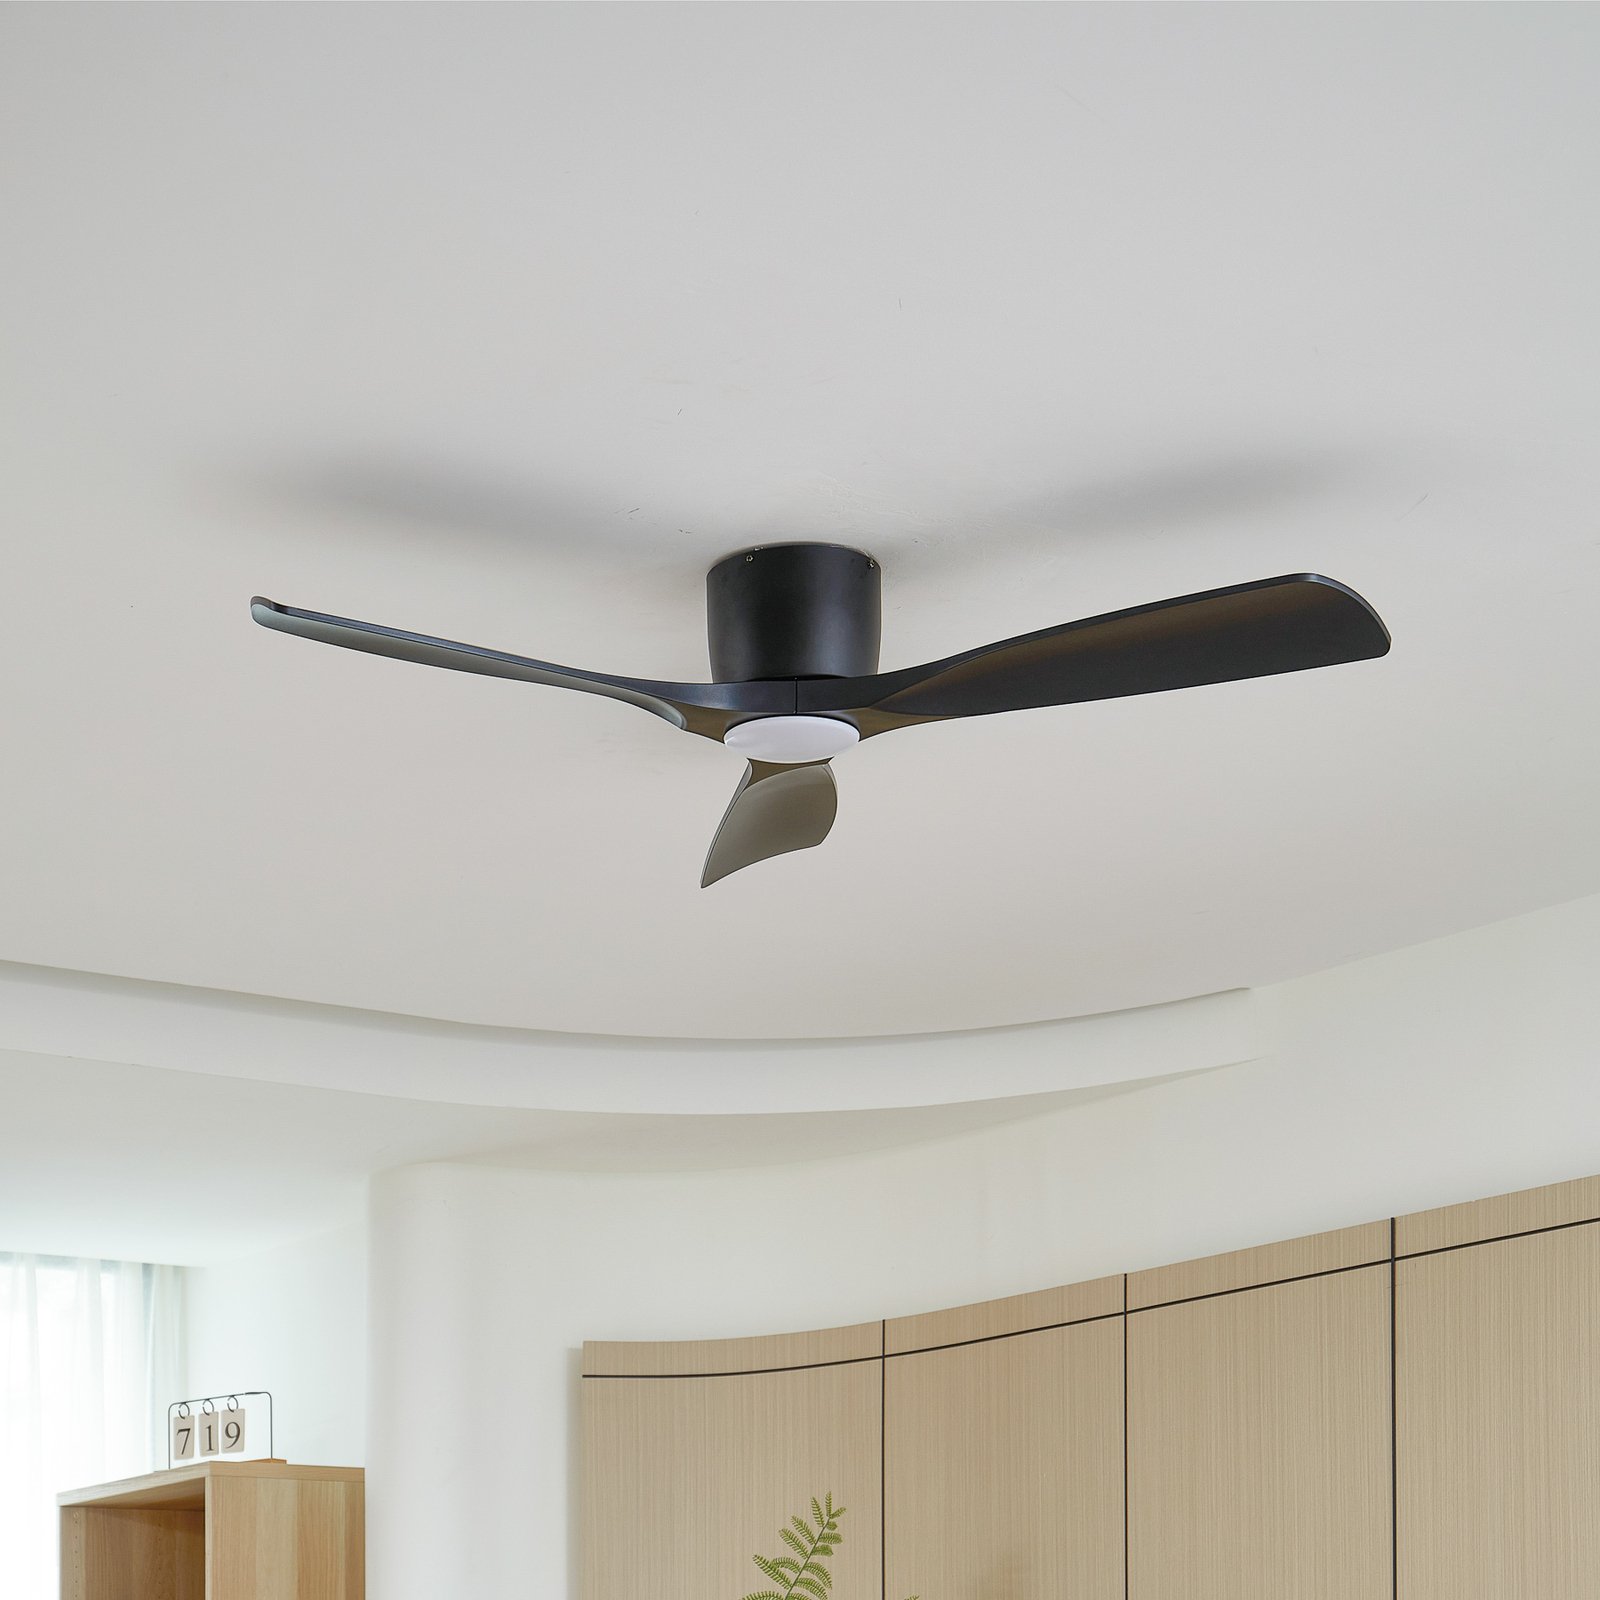 Stropní ventilátor Lucande LED Moneno, černý, DC, tichý